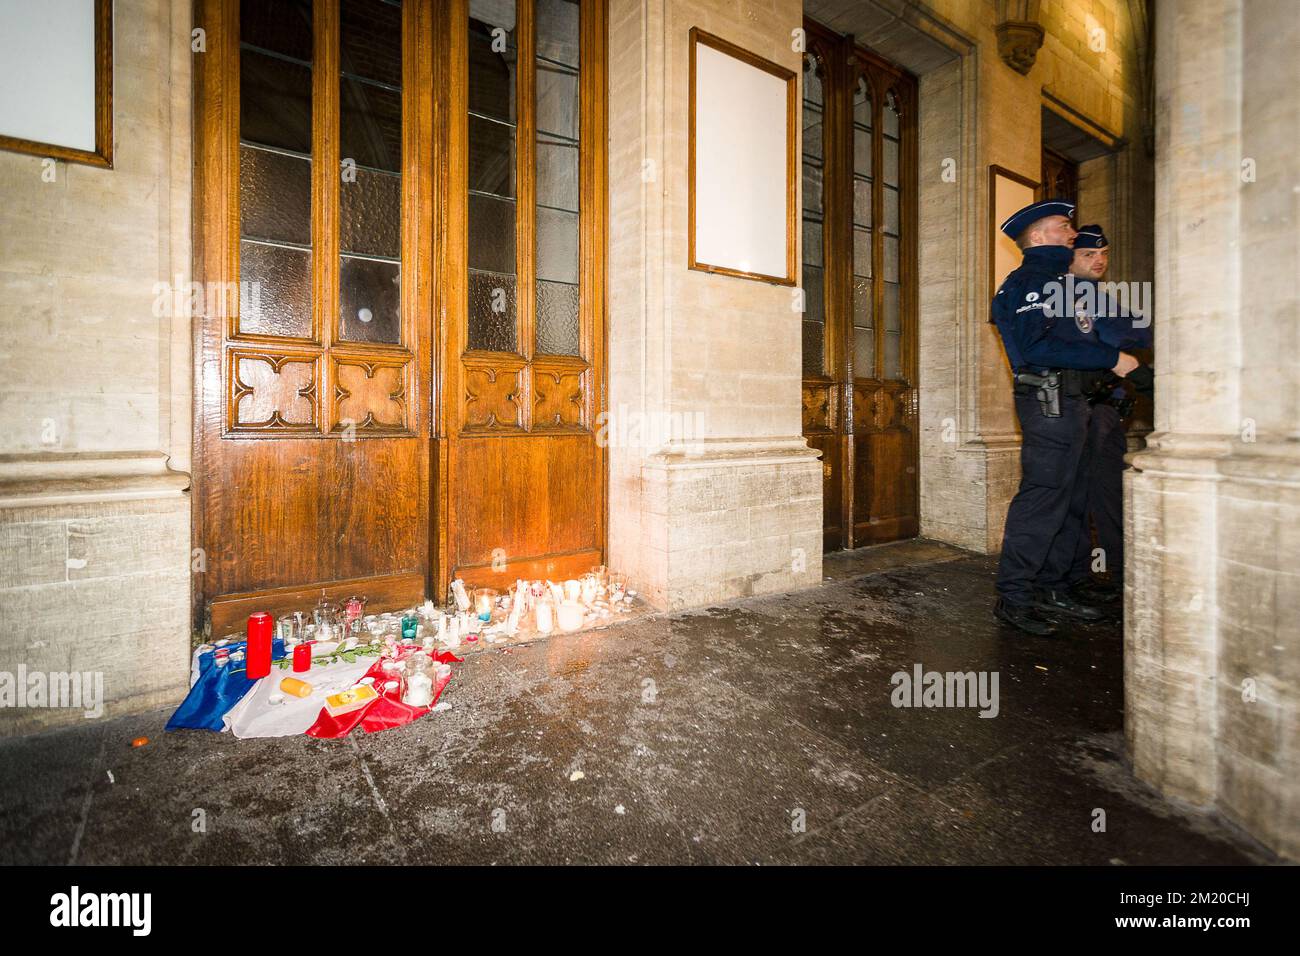 20151114 - BRUXELLES, BELGIQUE: L'illustration montre des bougies à l'hôtel de ville de la Grand-place de Bruxelles / Grote Markt après les attaques terroristes d'hier à Paris, samedi 14 novembre 2015, à Bruxelles. Plusieurs attaques terroristes à Paris, en France, ont fait au moins 128 morts et 180 blessés. La plupart des gens ont été tués lors d'un concert dans la salle de concert Bataclan, les autres cibles étaient un restaurant et un match de football. Ces attaques ont été revendiquées par l'État islamique. BELGA PHOTO JAMES ARTHUR GEKIERE Banque D'Images